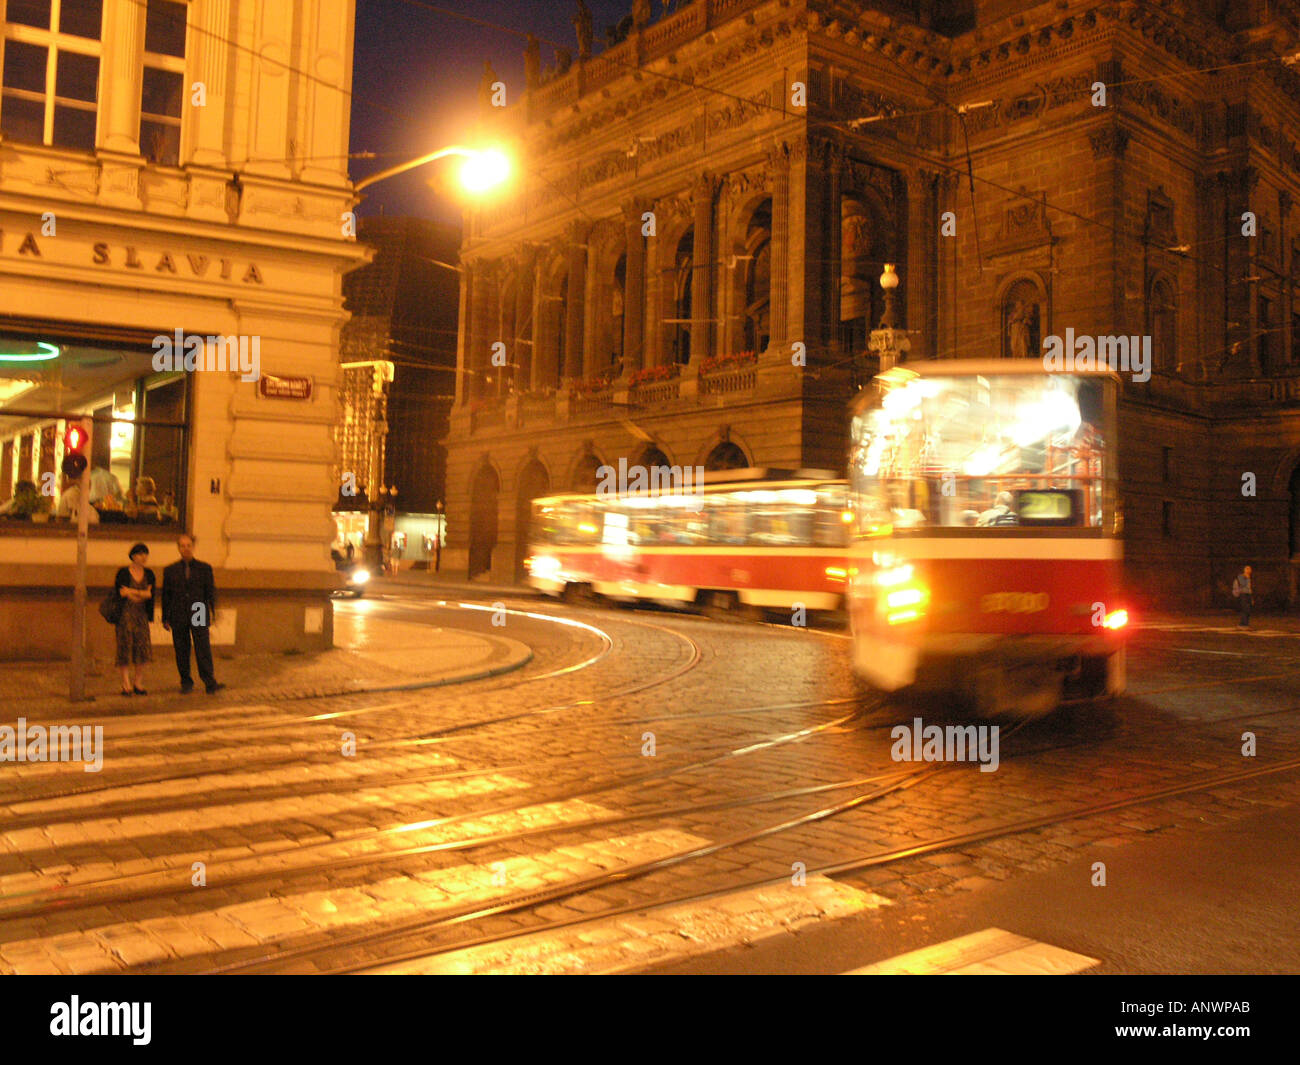 Straßenbahn-Kurven auf Smetaonvo Nabrezi durch das nationale Theater Prag Tschechische Republik Europa EU Reisen Reisen Reisen Reisen Stockfoto